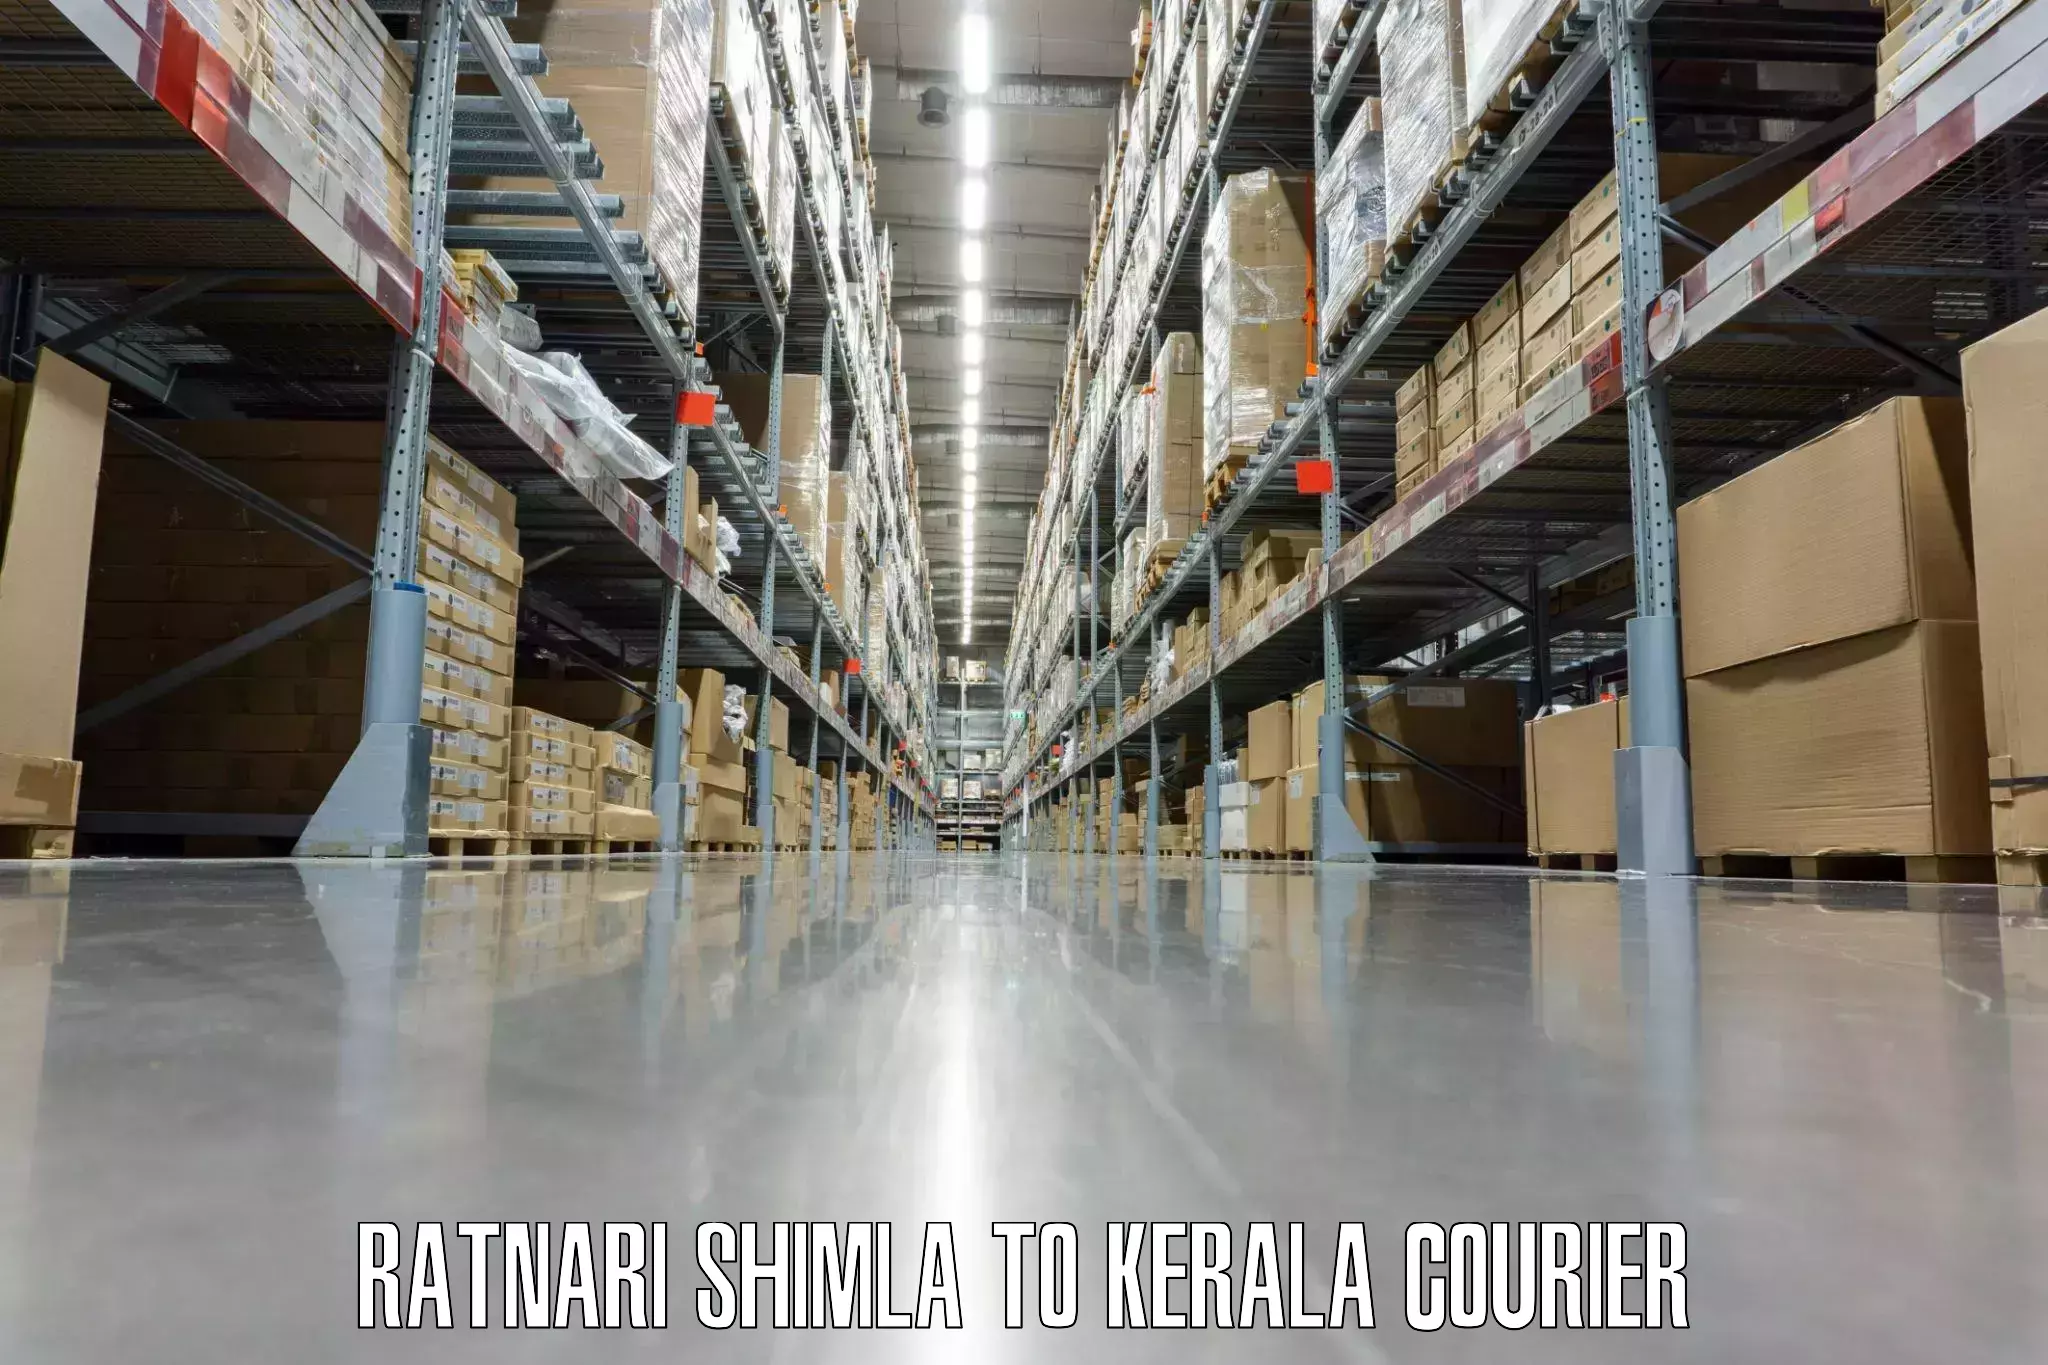 Luggage shipment processing in Ratnari Shimla to Kerala